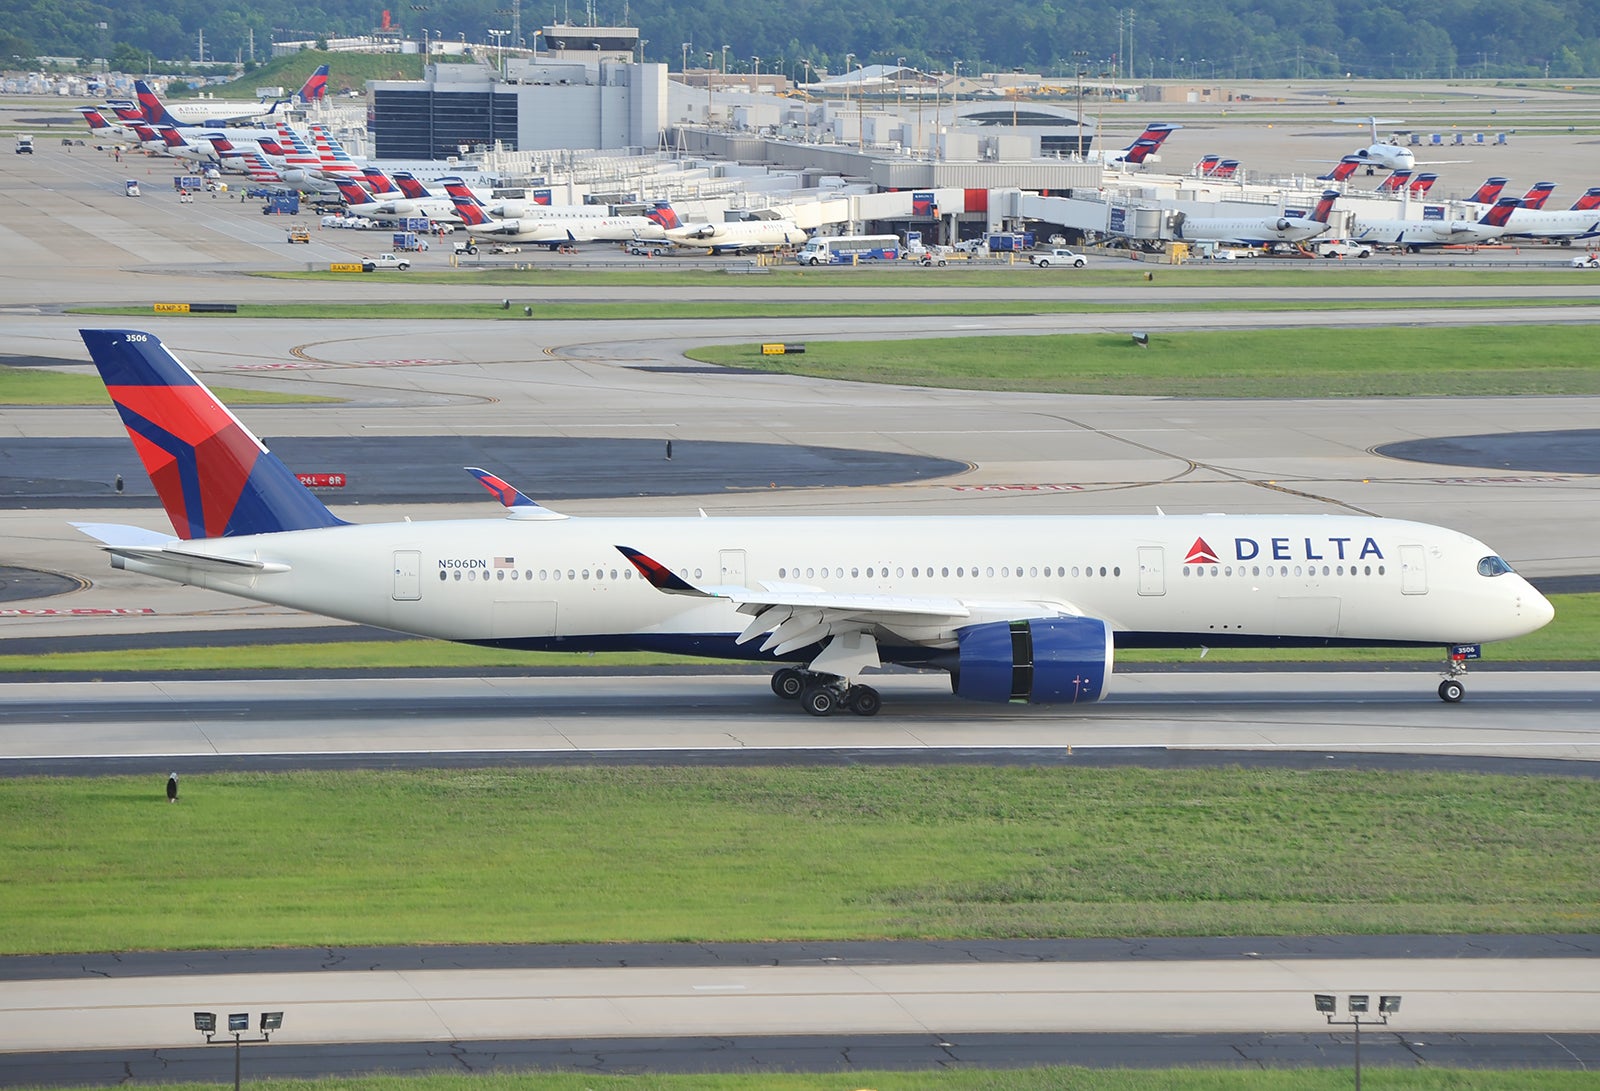 Delta Airbus A350 at ATL